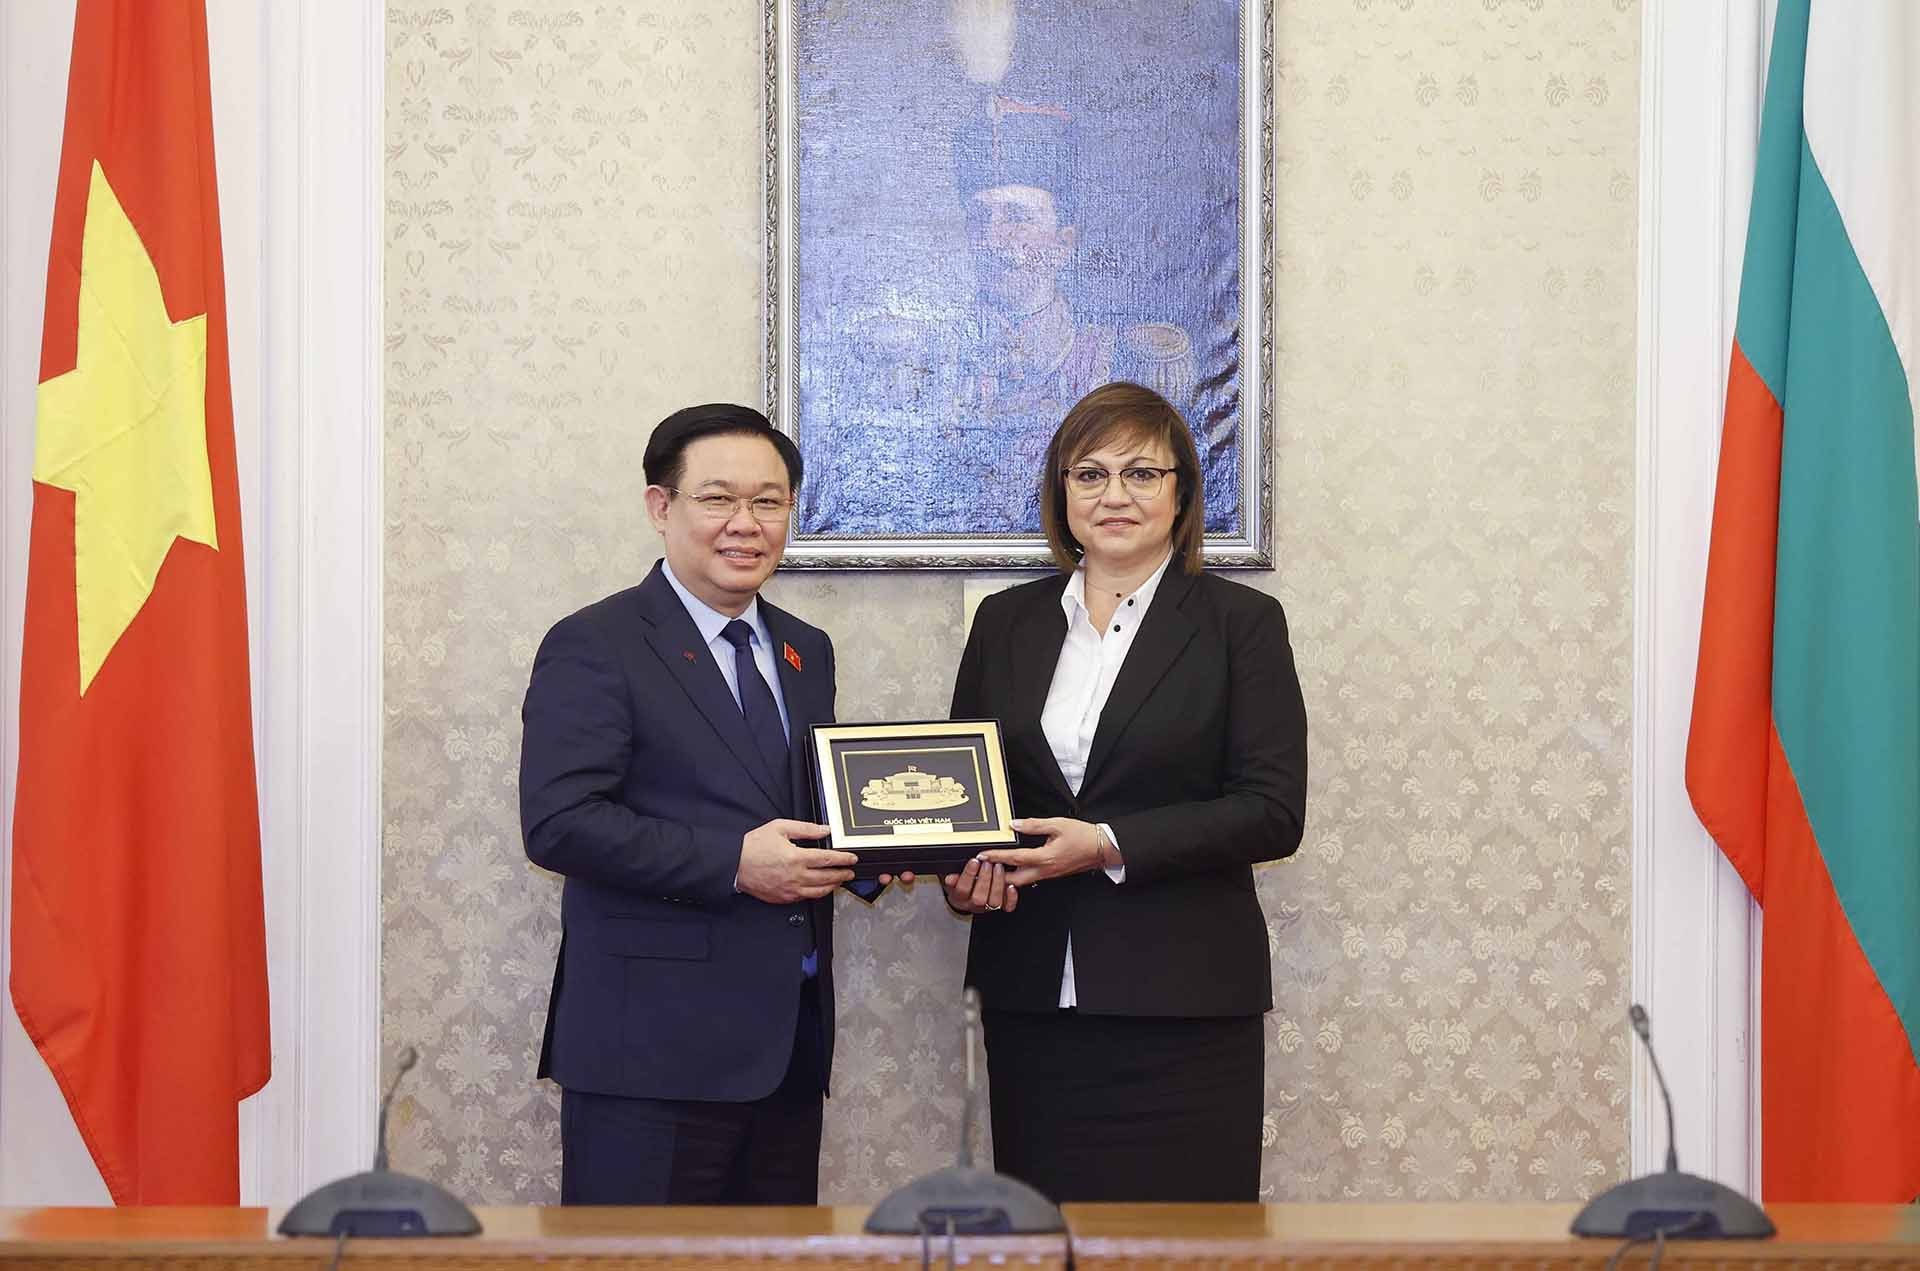 Chủ tịch Quốc hội Vương Đình Huệ tặng quà lưu niệm bà Kornelya Ninova, Chủ tịch Đảng BSP, Chủ tịch Nhóm nghị sĩ BSP vì Bulgaria. (Nguồn: TTXVN)